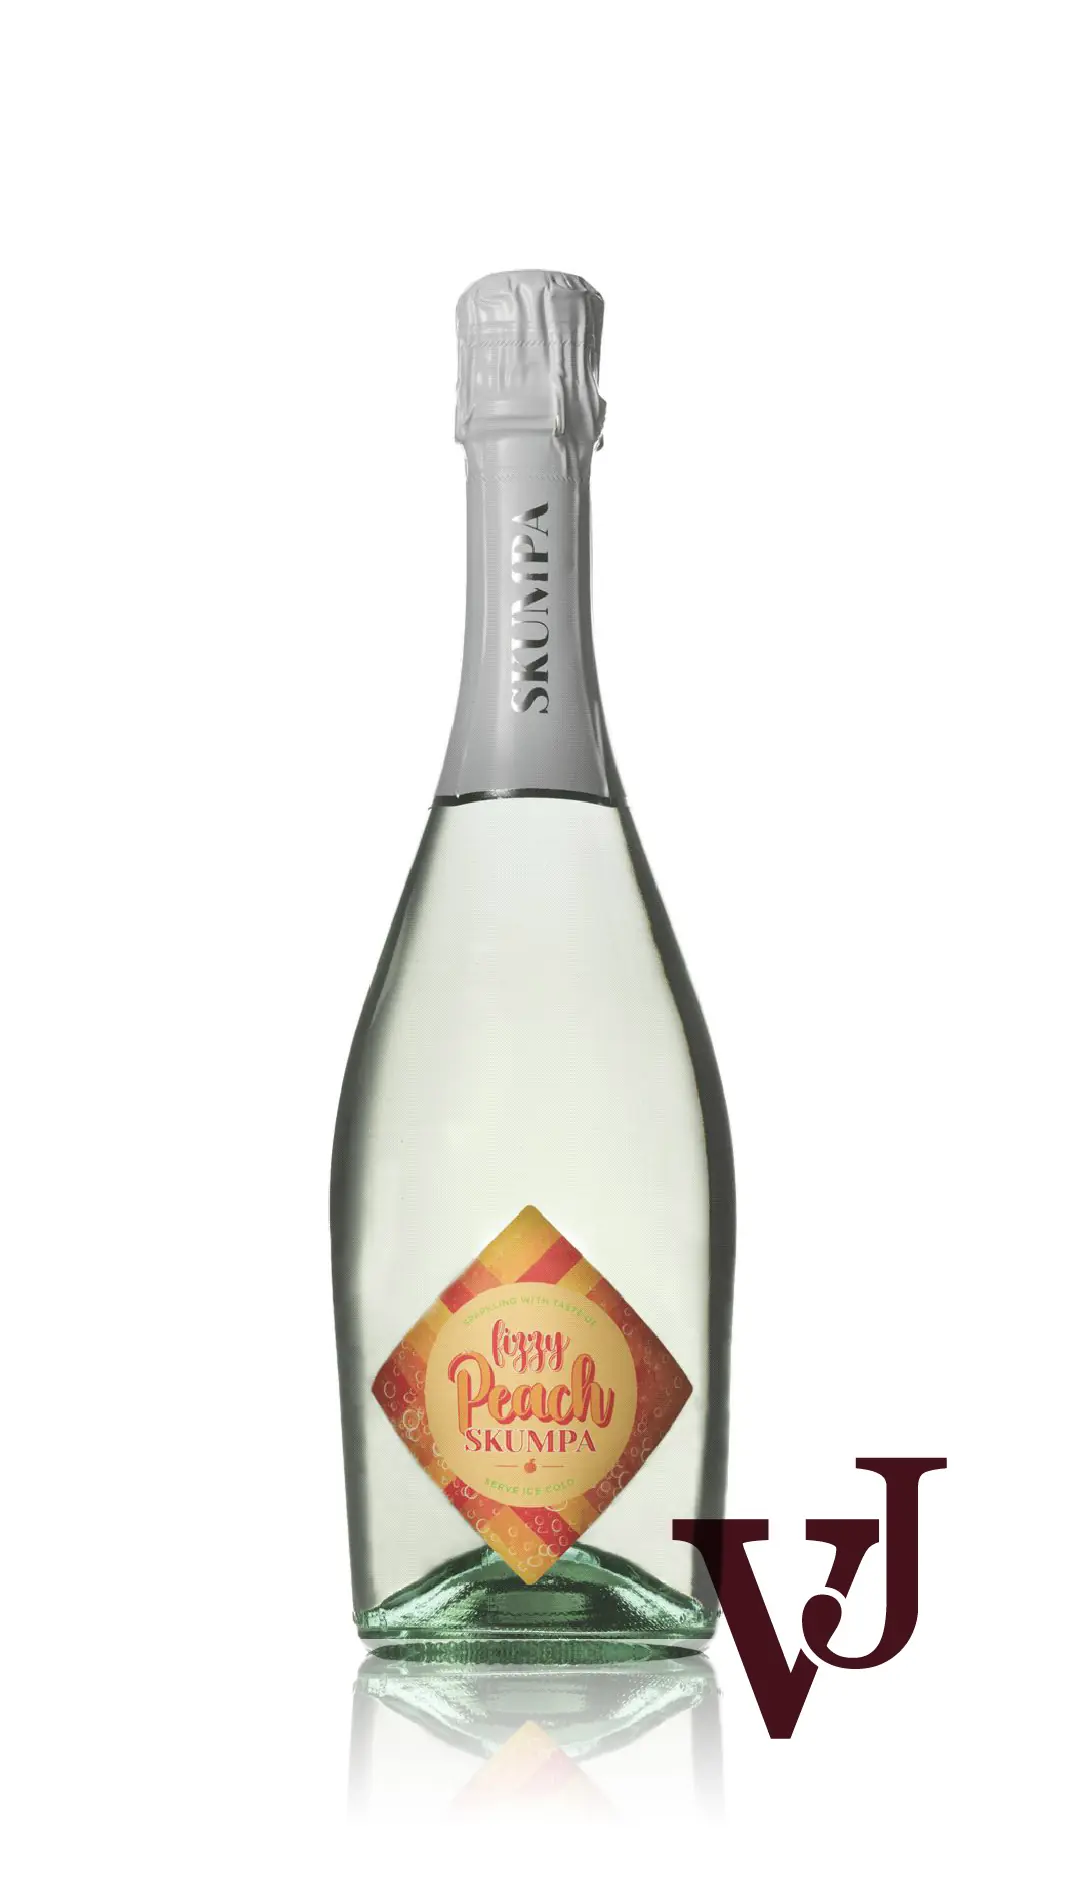 Mousserande Vin - Skumpa artikel nummer 5611301 från producenten Lively Wines Sweden AB från området Italien - Vinjournalen.se